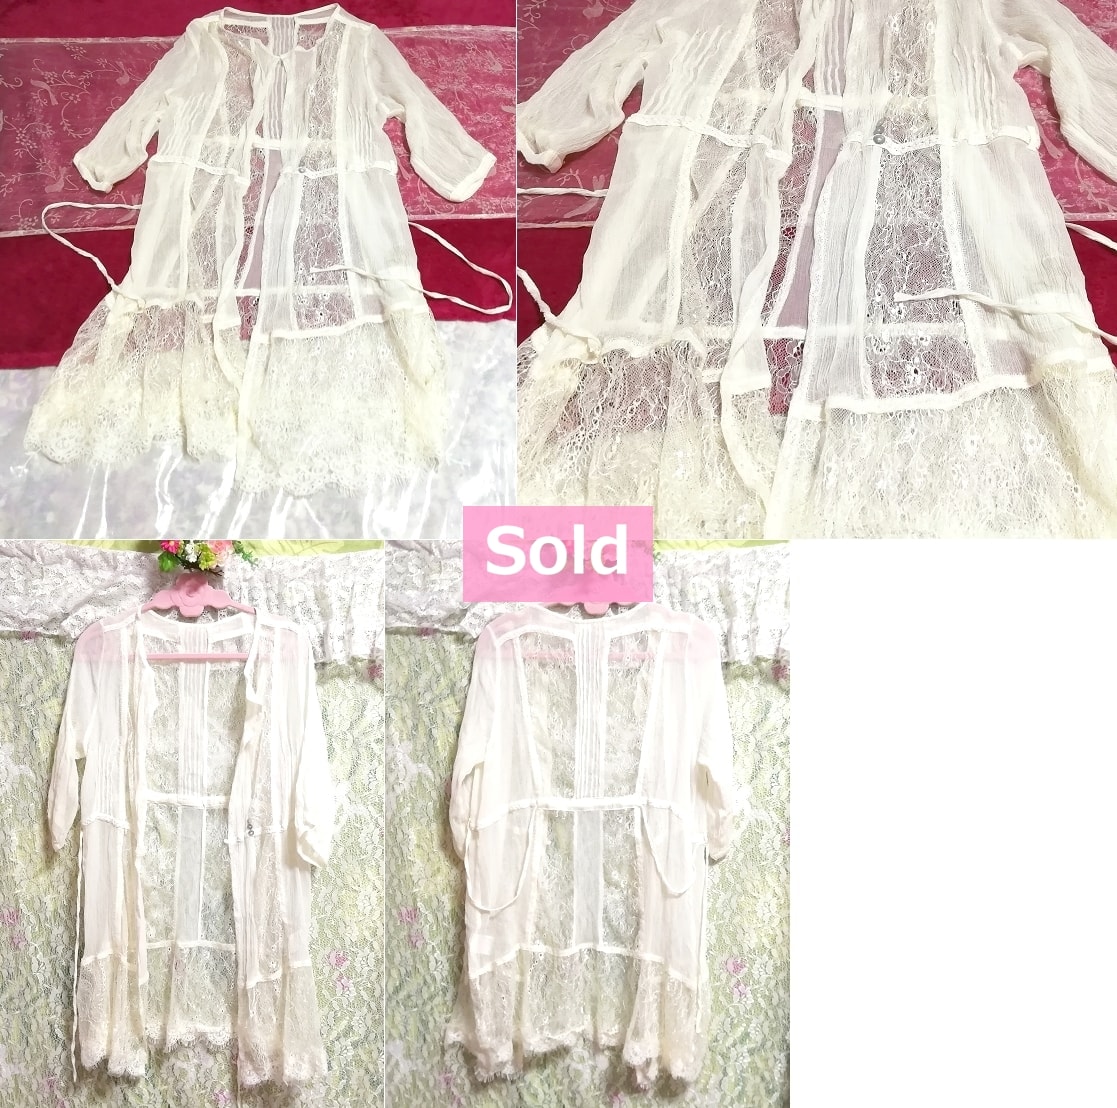 絹シルク100%フローラルホワイトレース羽織/カーディガン Silk 100% floral white lace coat/cardigan